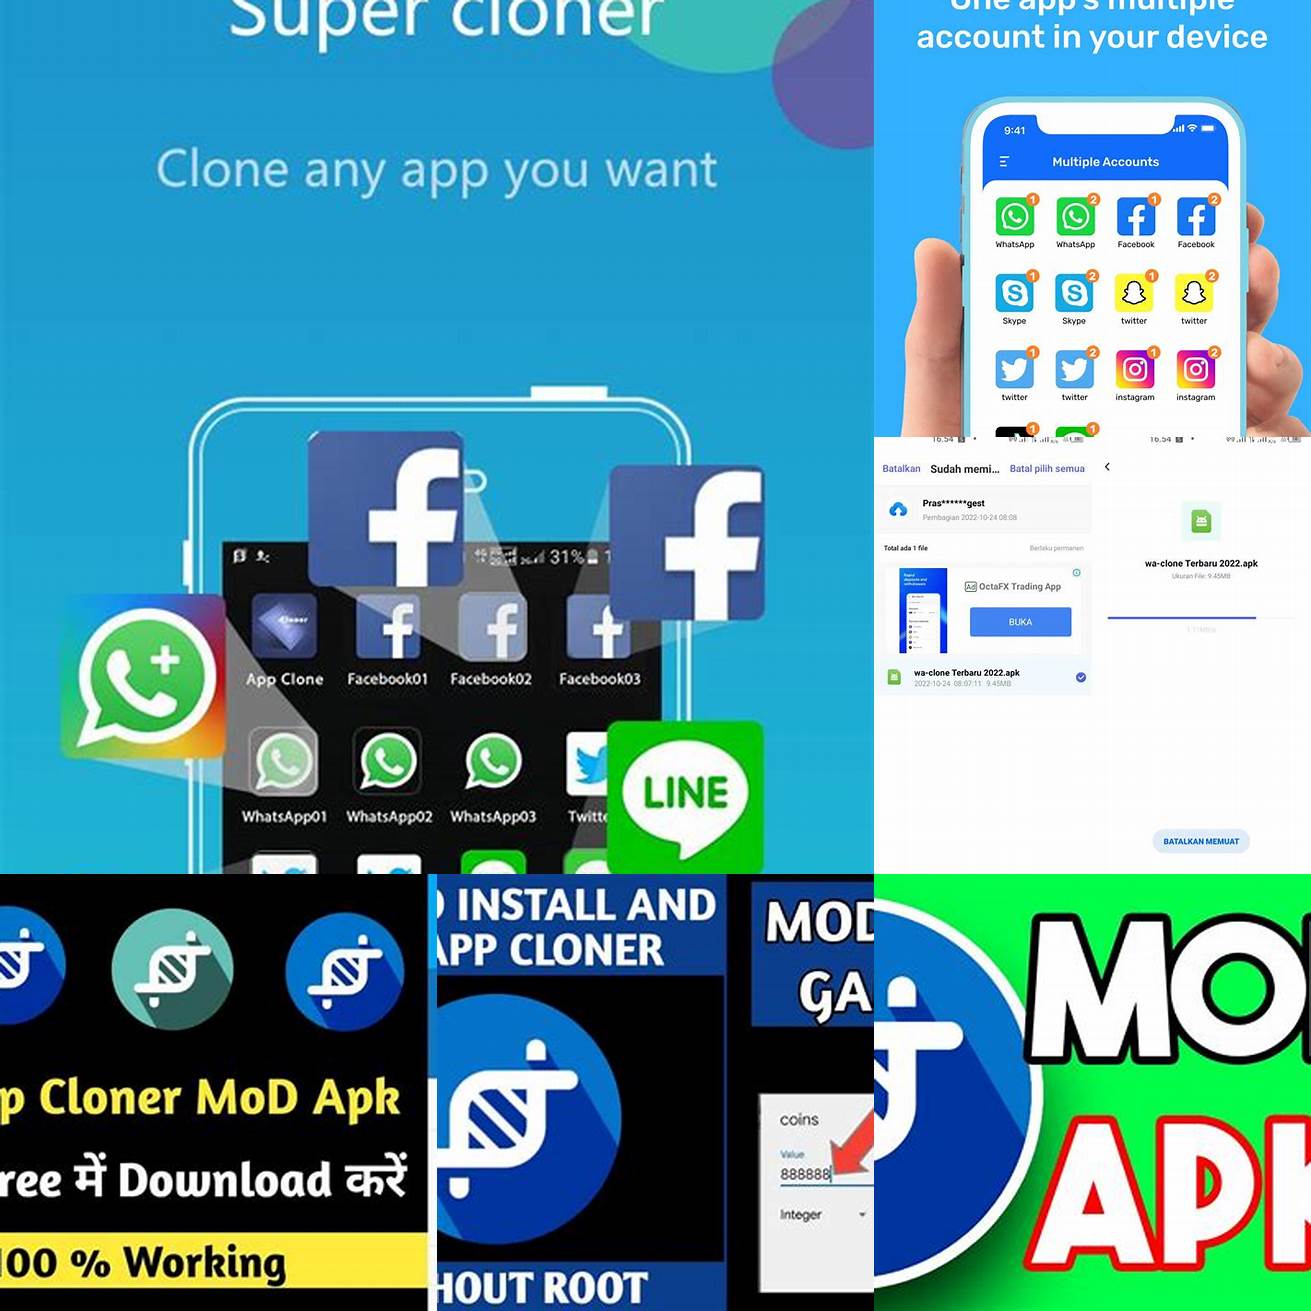 Langkah 1 Download dan instal App Cloner Mod Apk dari sumber yang terpercaya